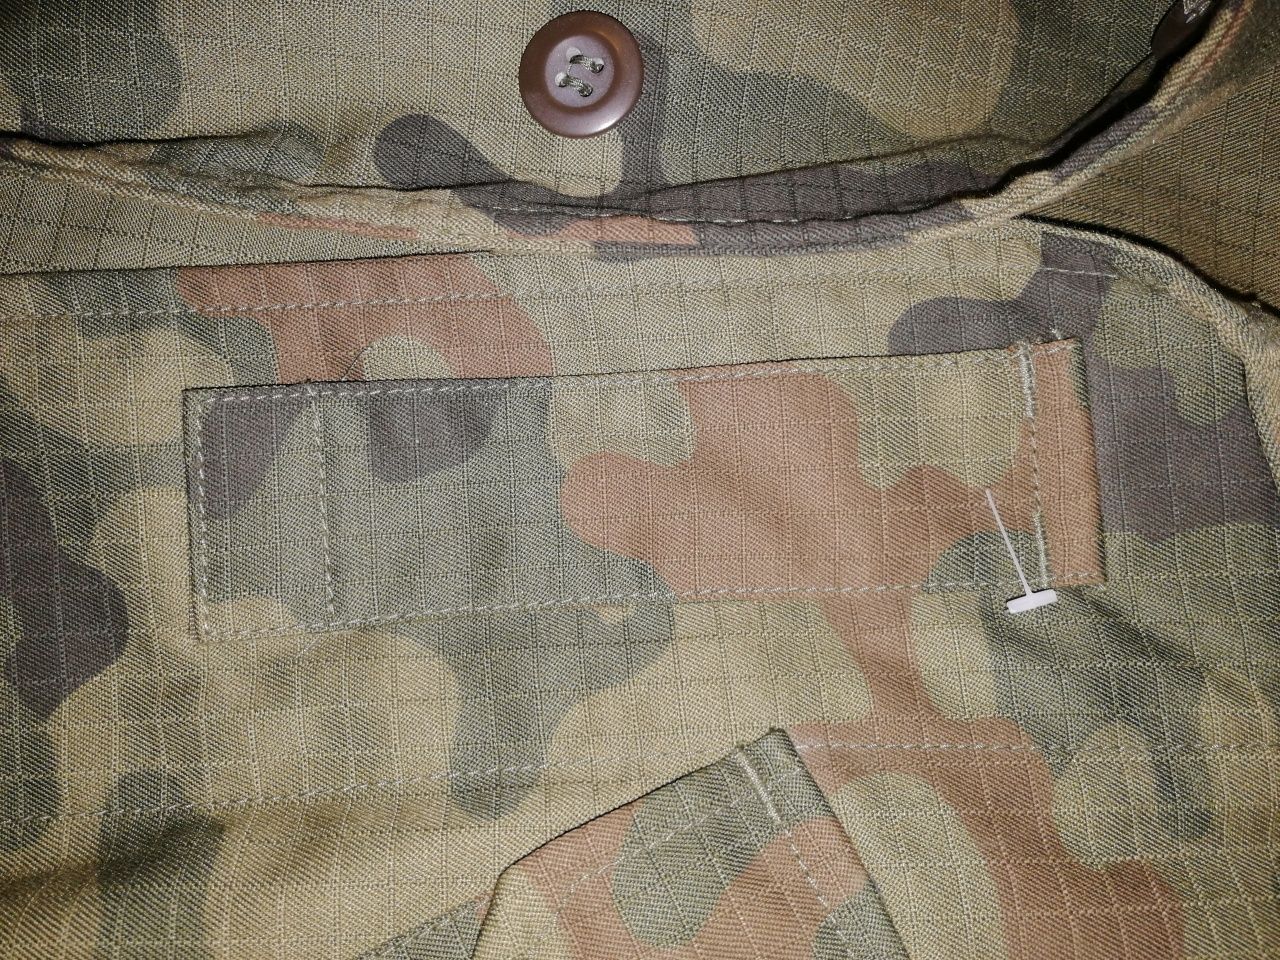 Mundur, bluza do munduru polowego wzór 2010 M/R + (gratis)